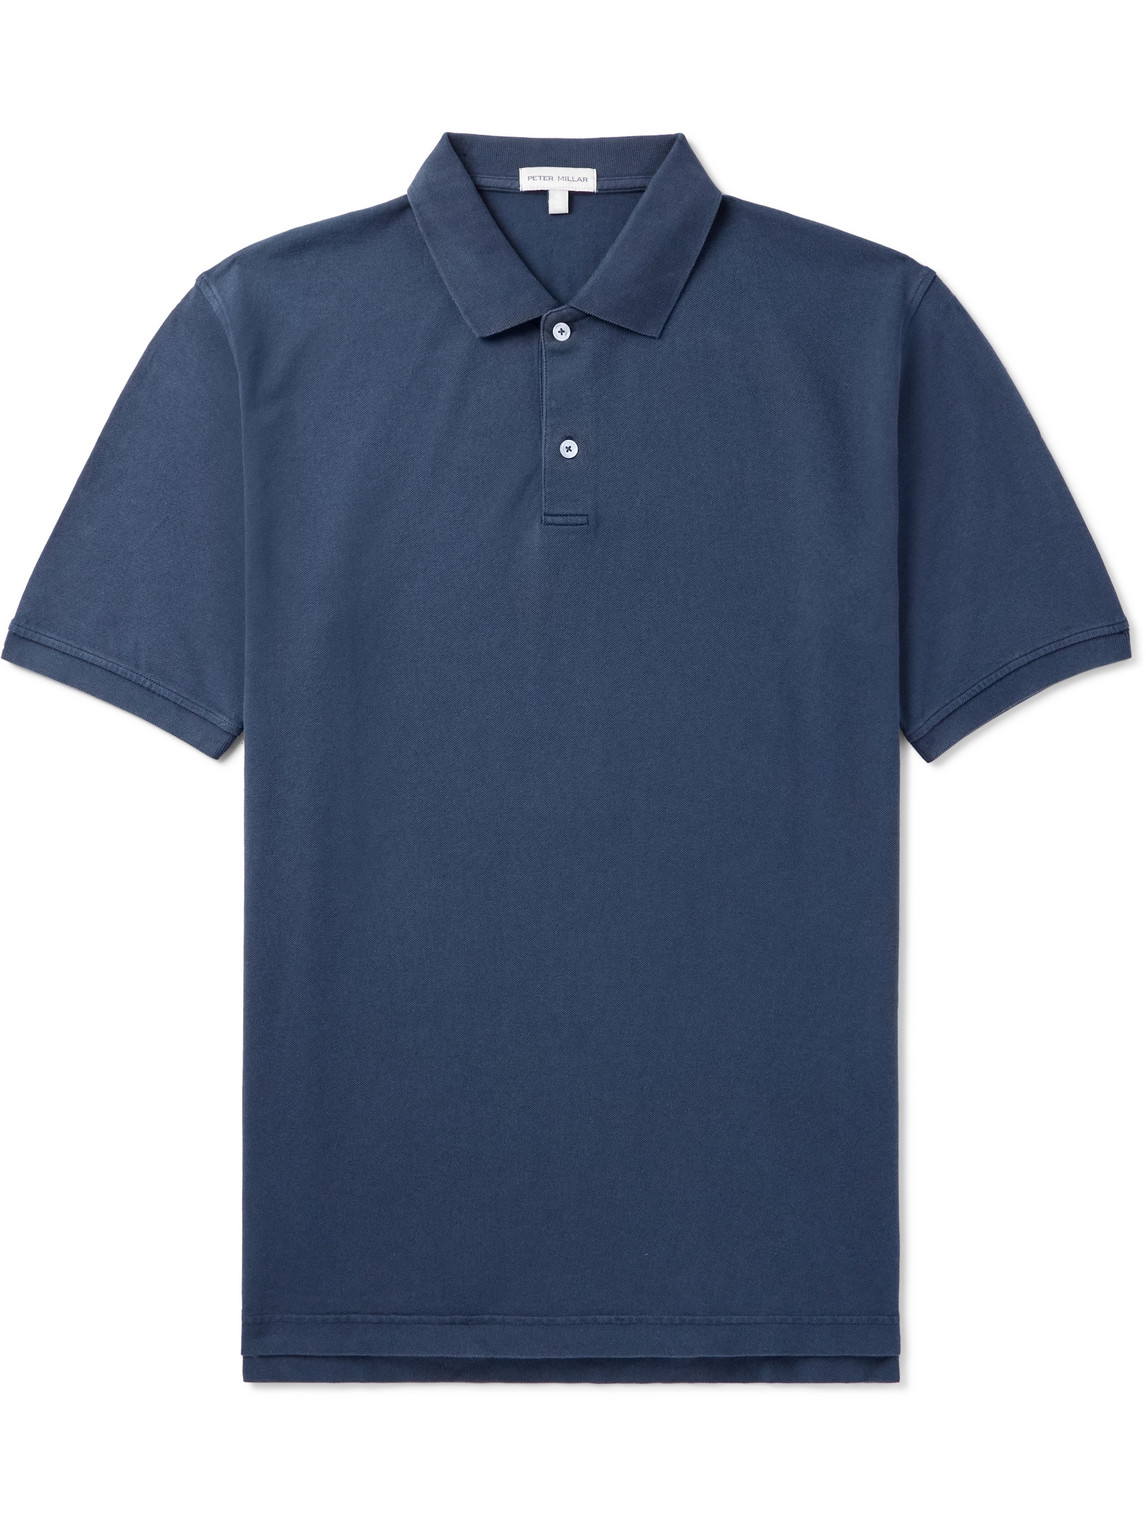 Sunrise Garment-Dyed Cotton-Piqué Polo Shirt